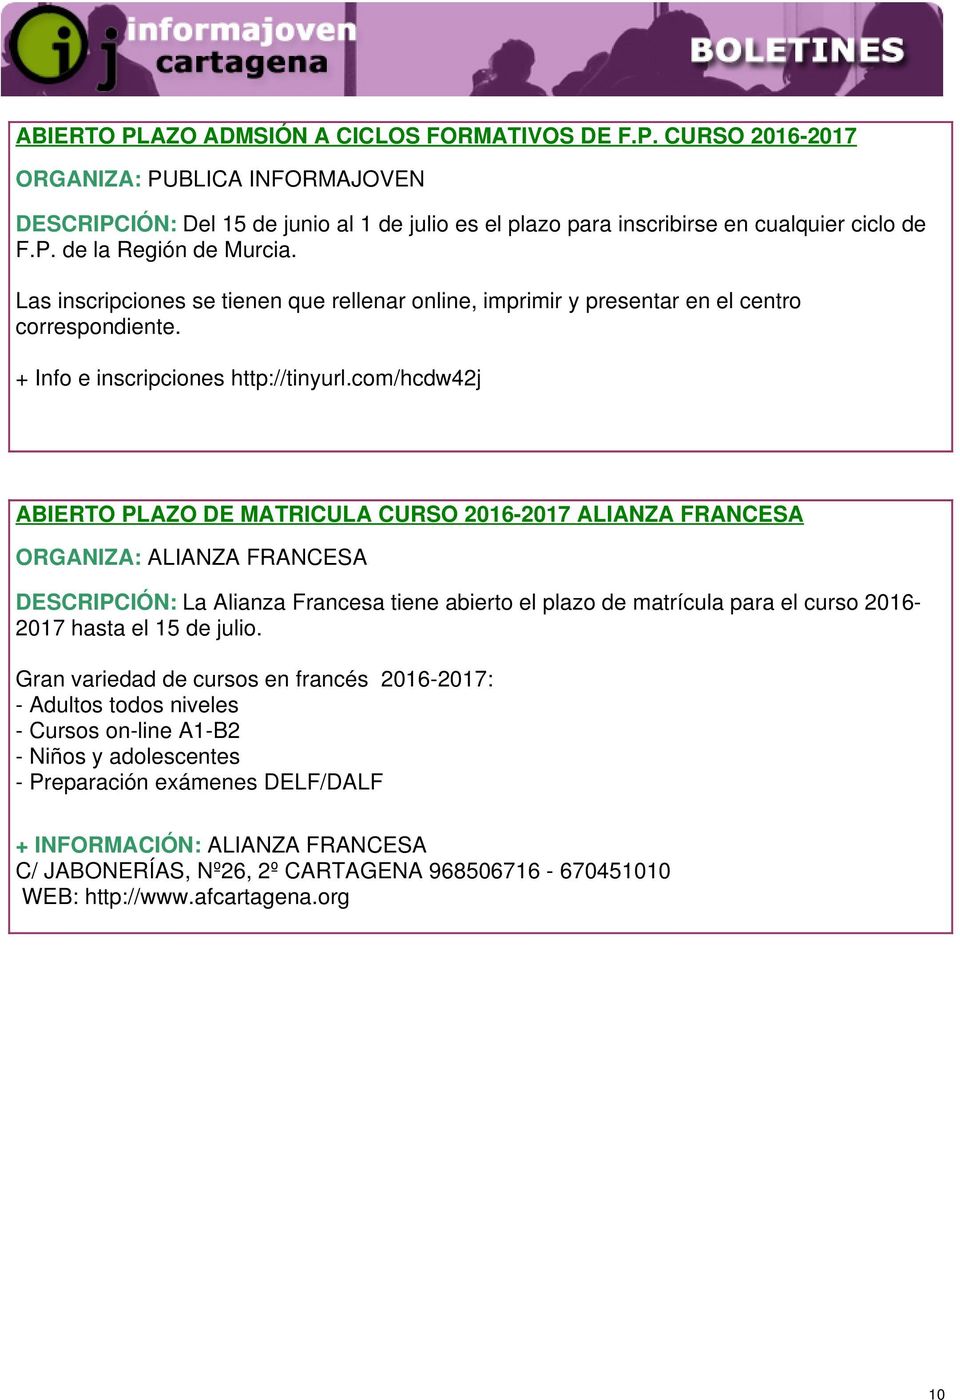 com/hcdw42j ABIERTO PLAZO DE MATRICULA CURSO 2016-2017 ALIANZA FRANCESA ORGANIZA: ALIANZA FRANCESA DESCRIPCIÓN: La Alianza Francesa tiene abierto el plazo de matrícula para el curso 2016-2017 hasta